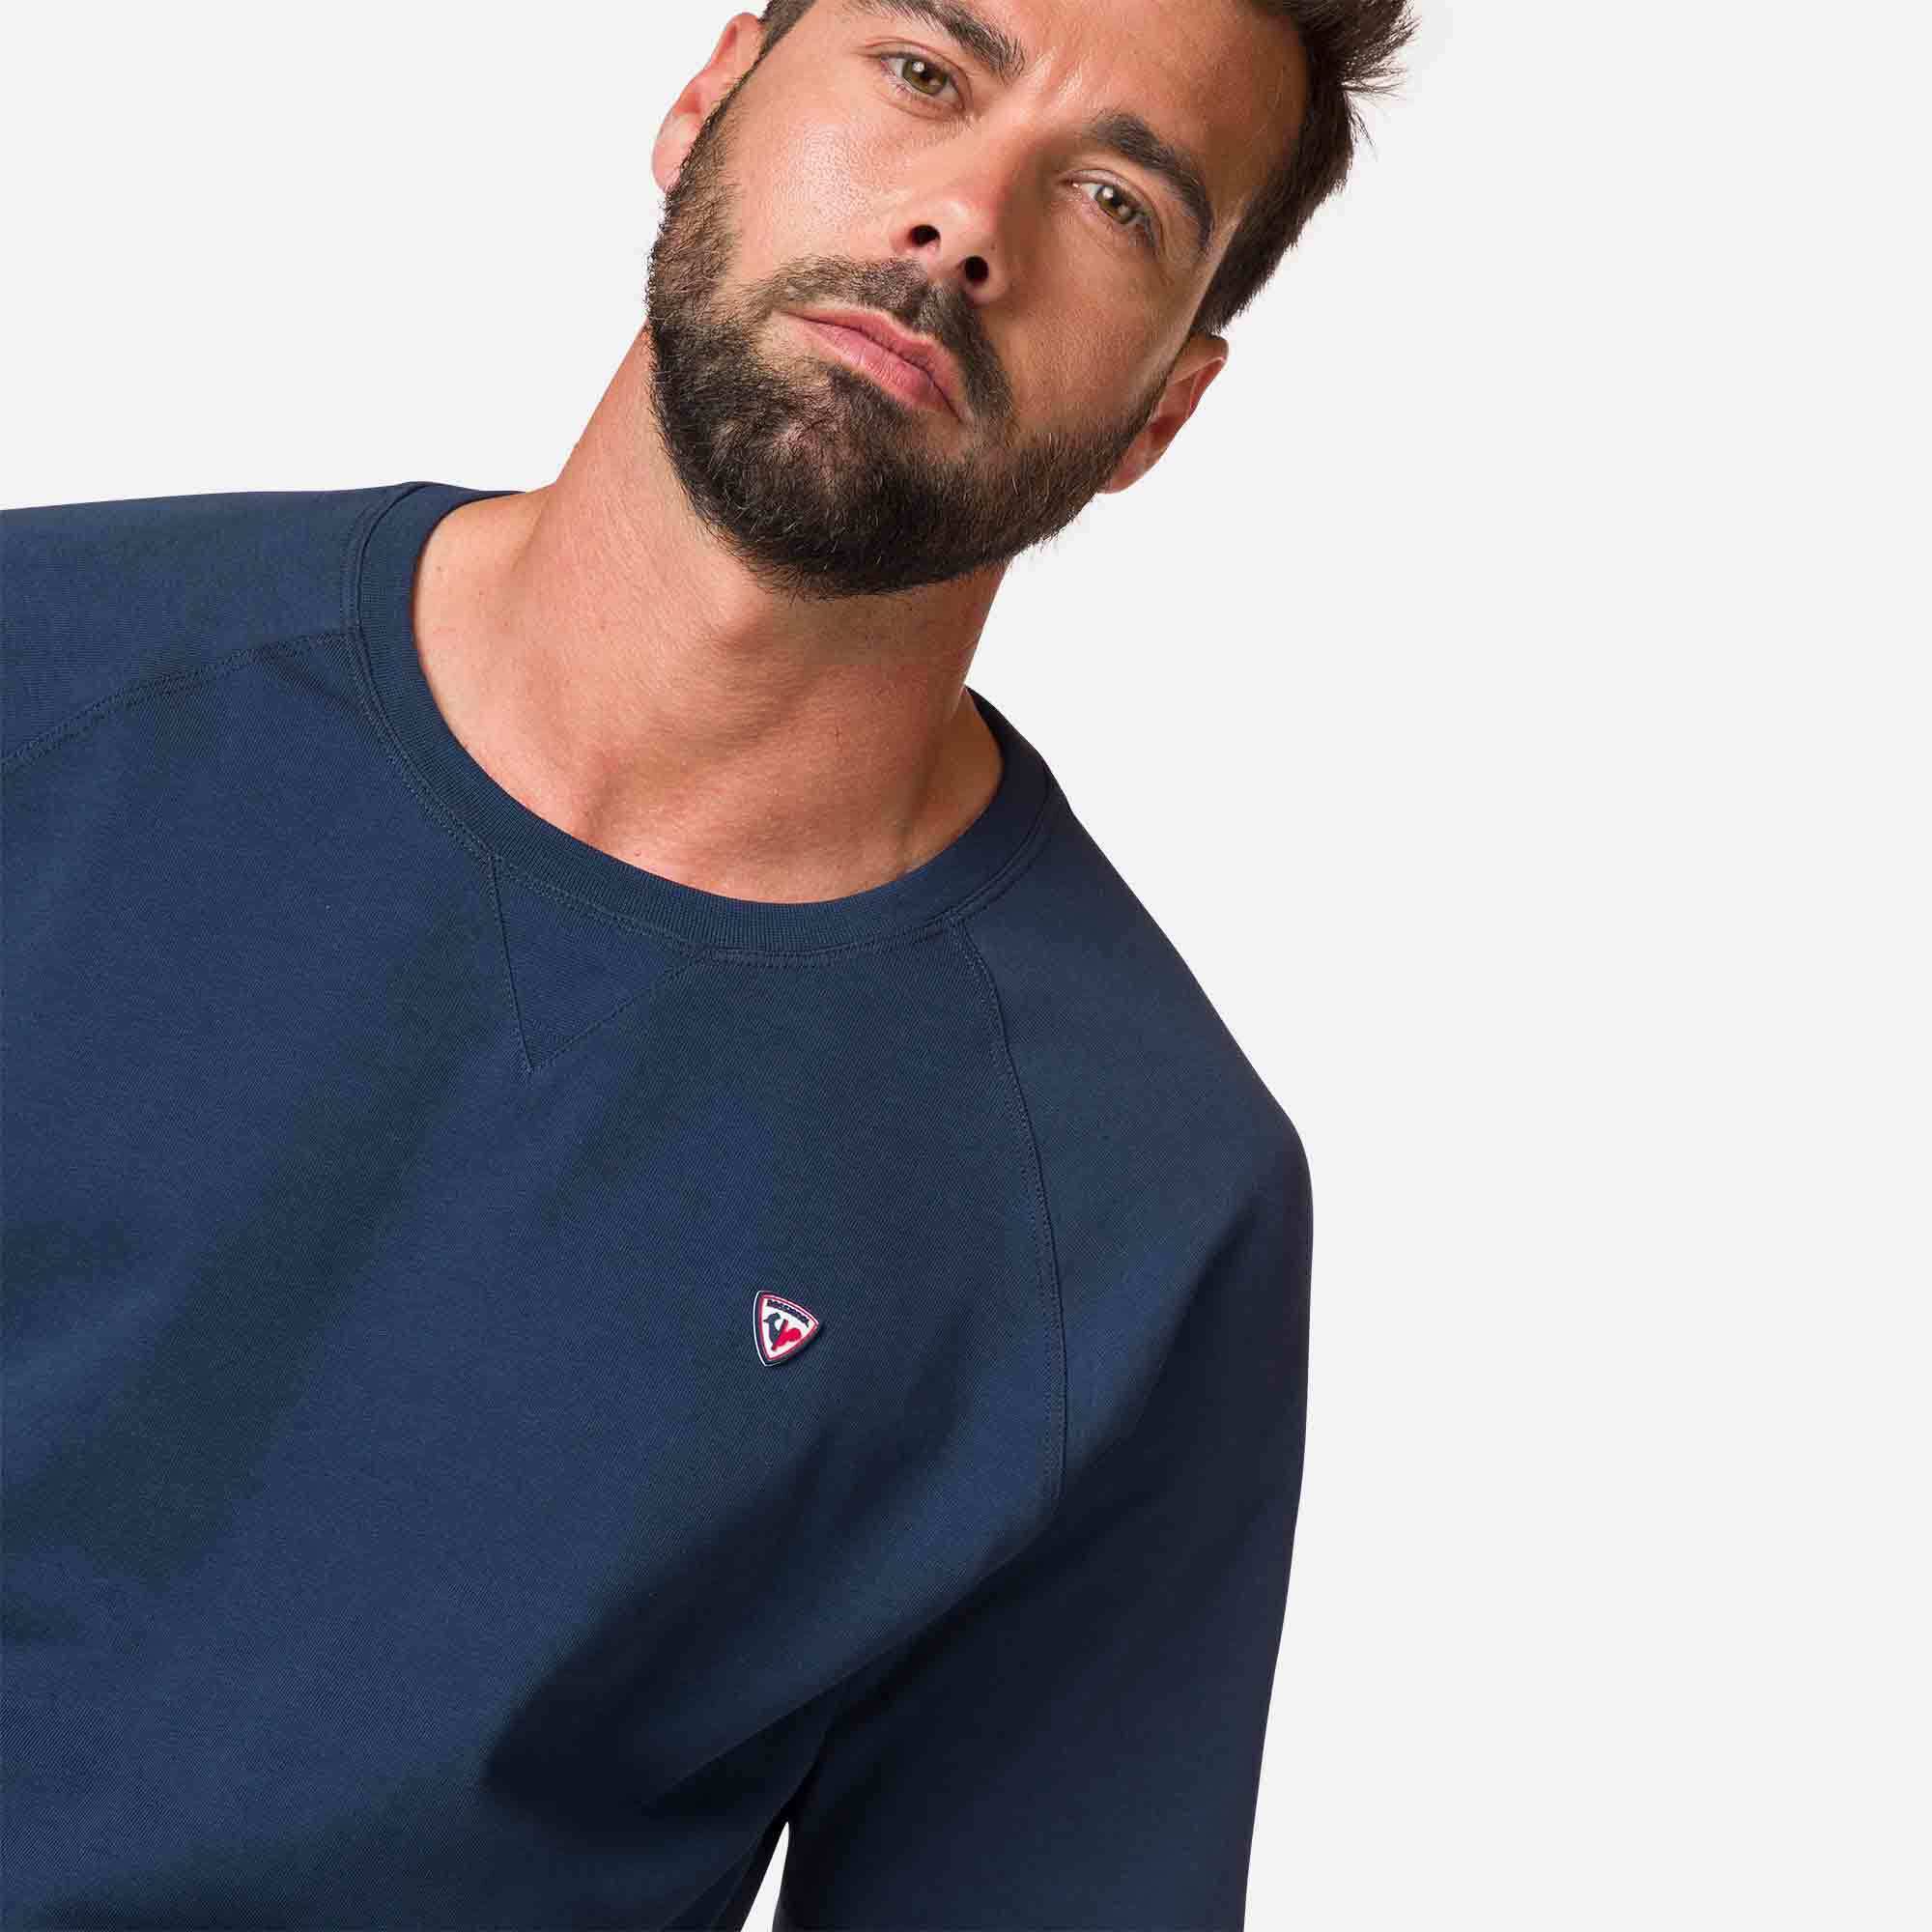 Custom Cut off Raglan Crew Neck Fleece Sweatshirt for Men Leisure